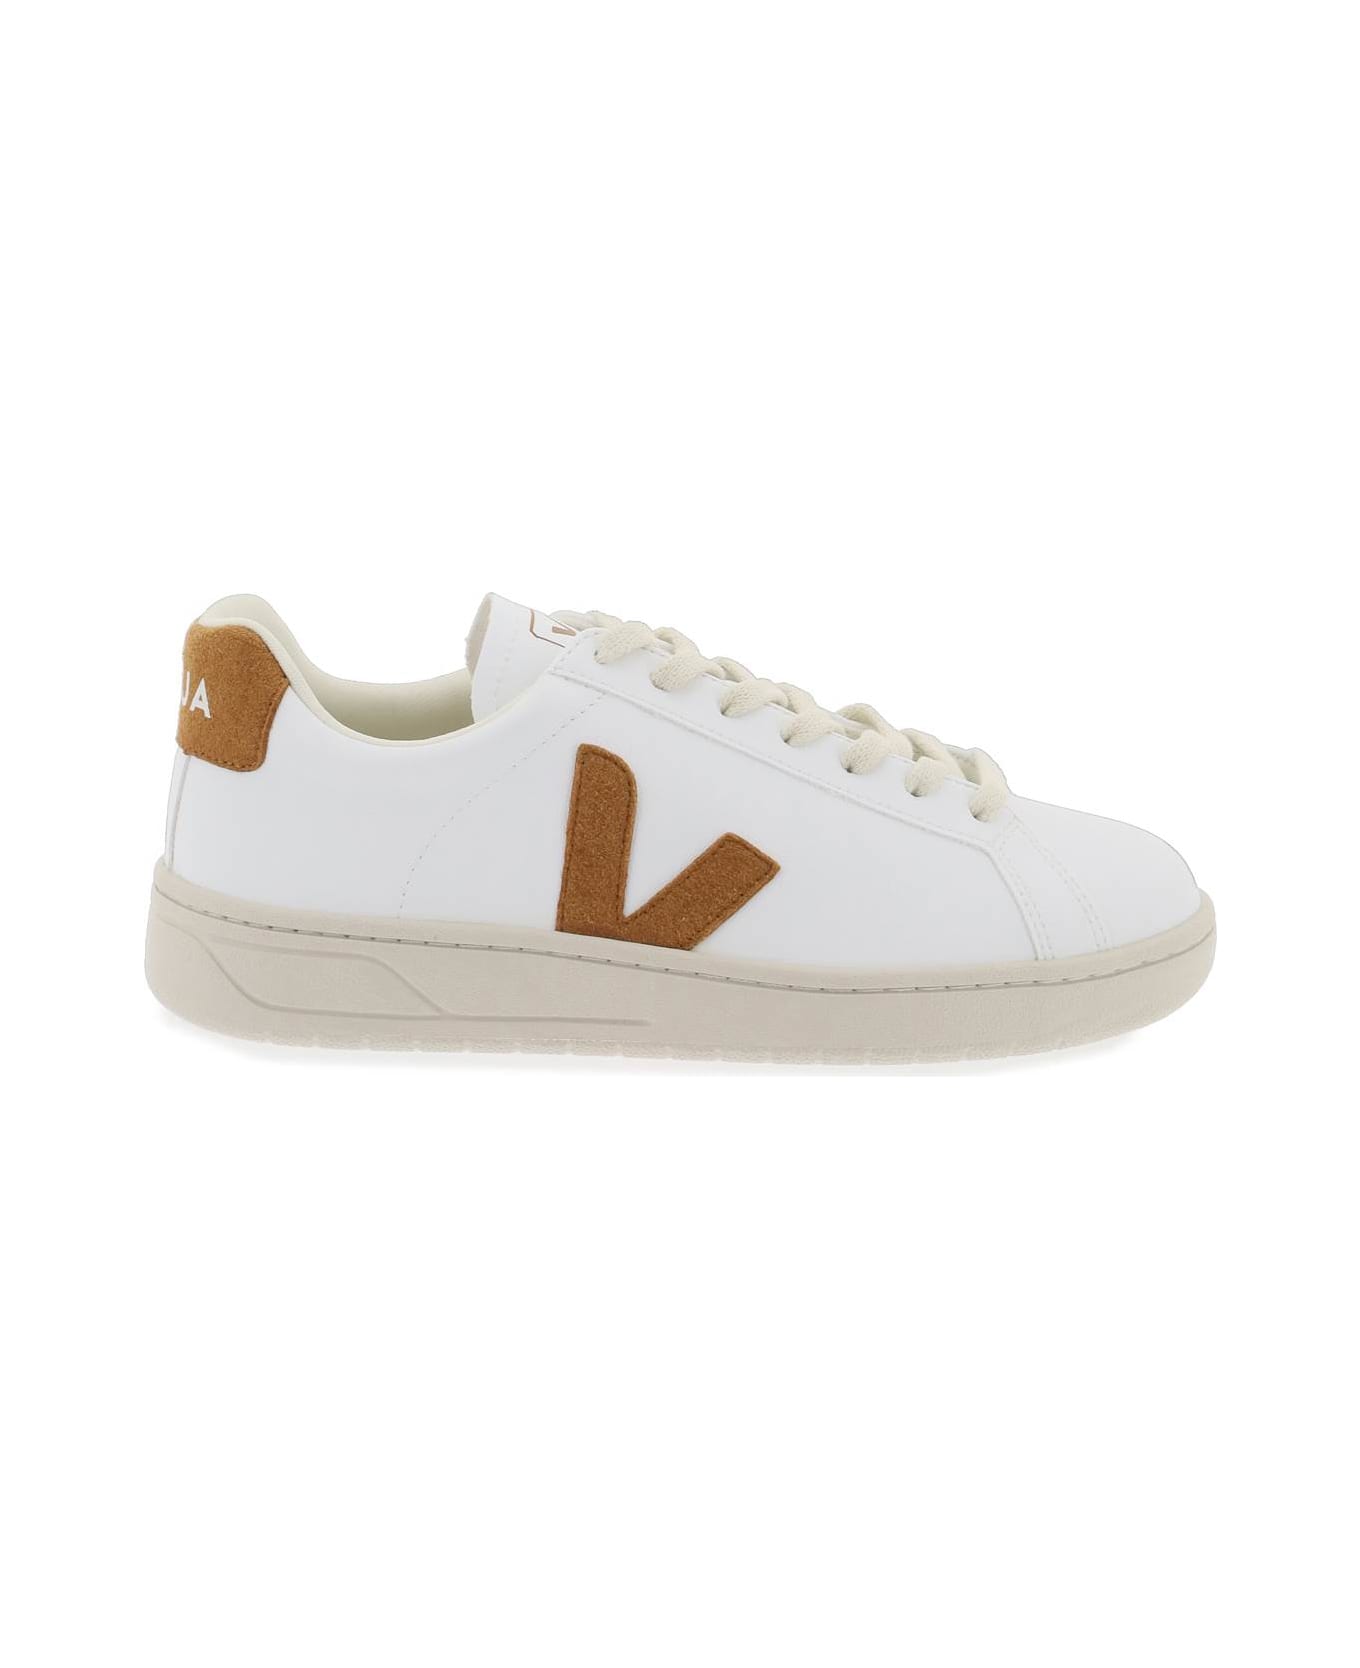 Veja 'urca' Vegan Sneakers - WHITE CAMEL (White)